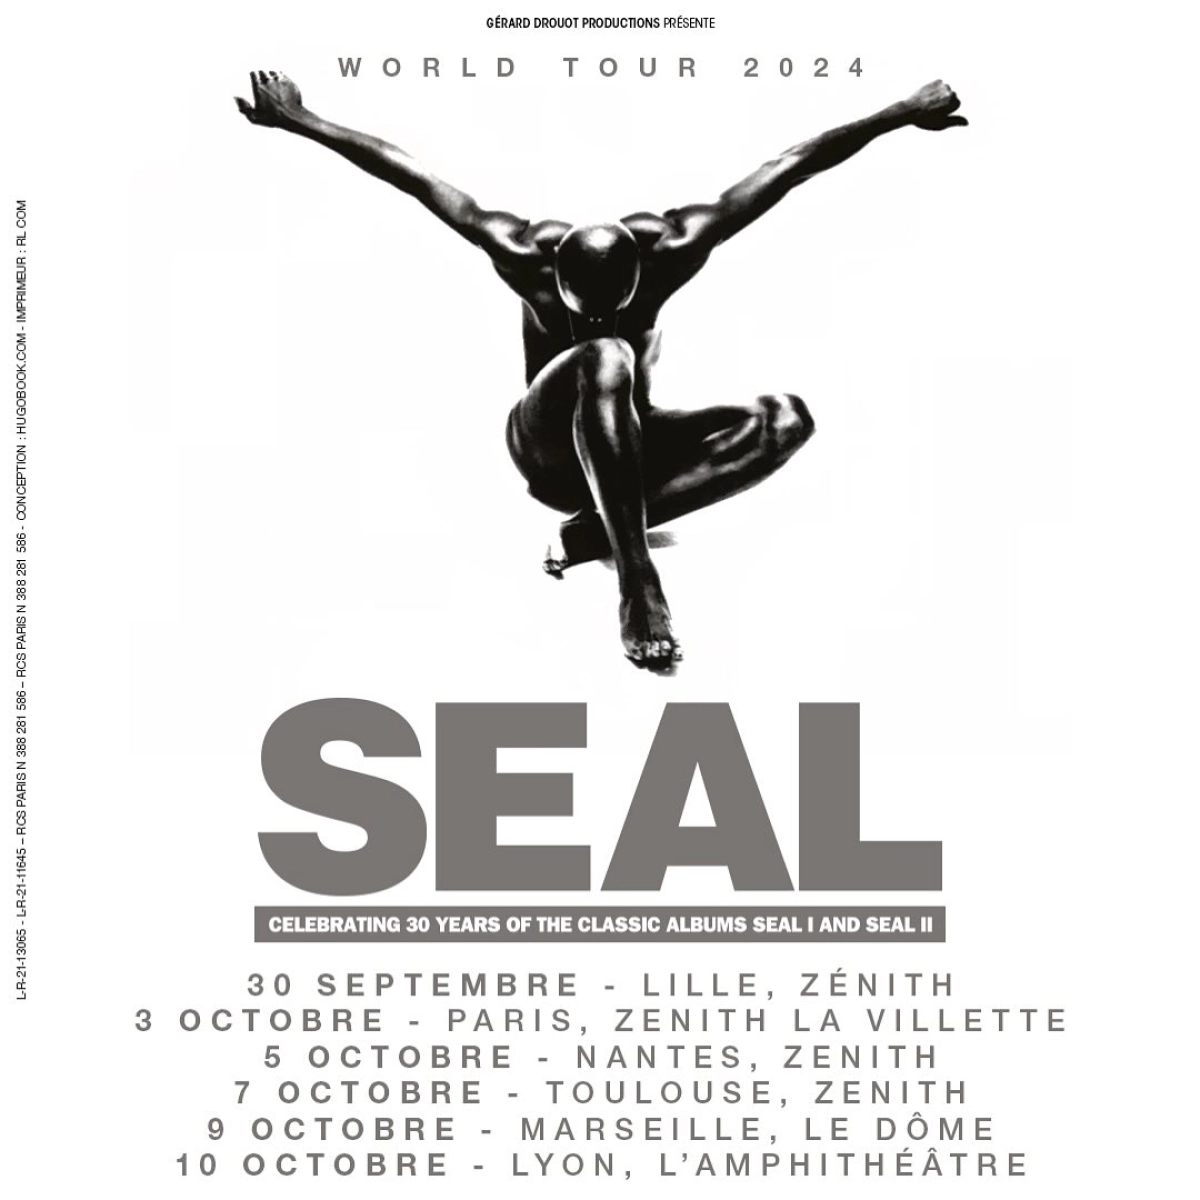 Seal al L'amphitheatre Tickets